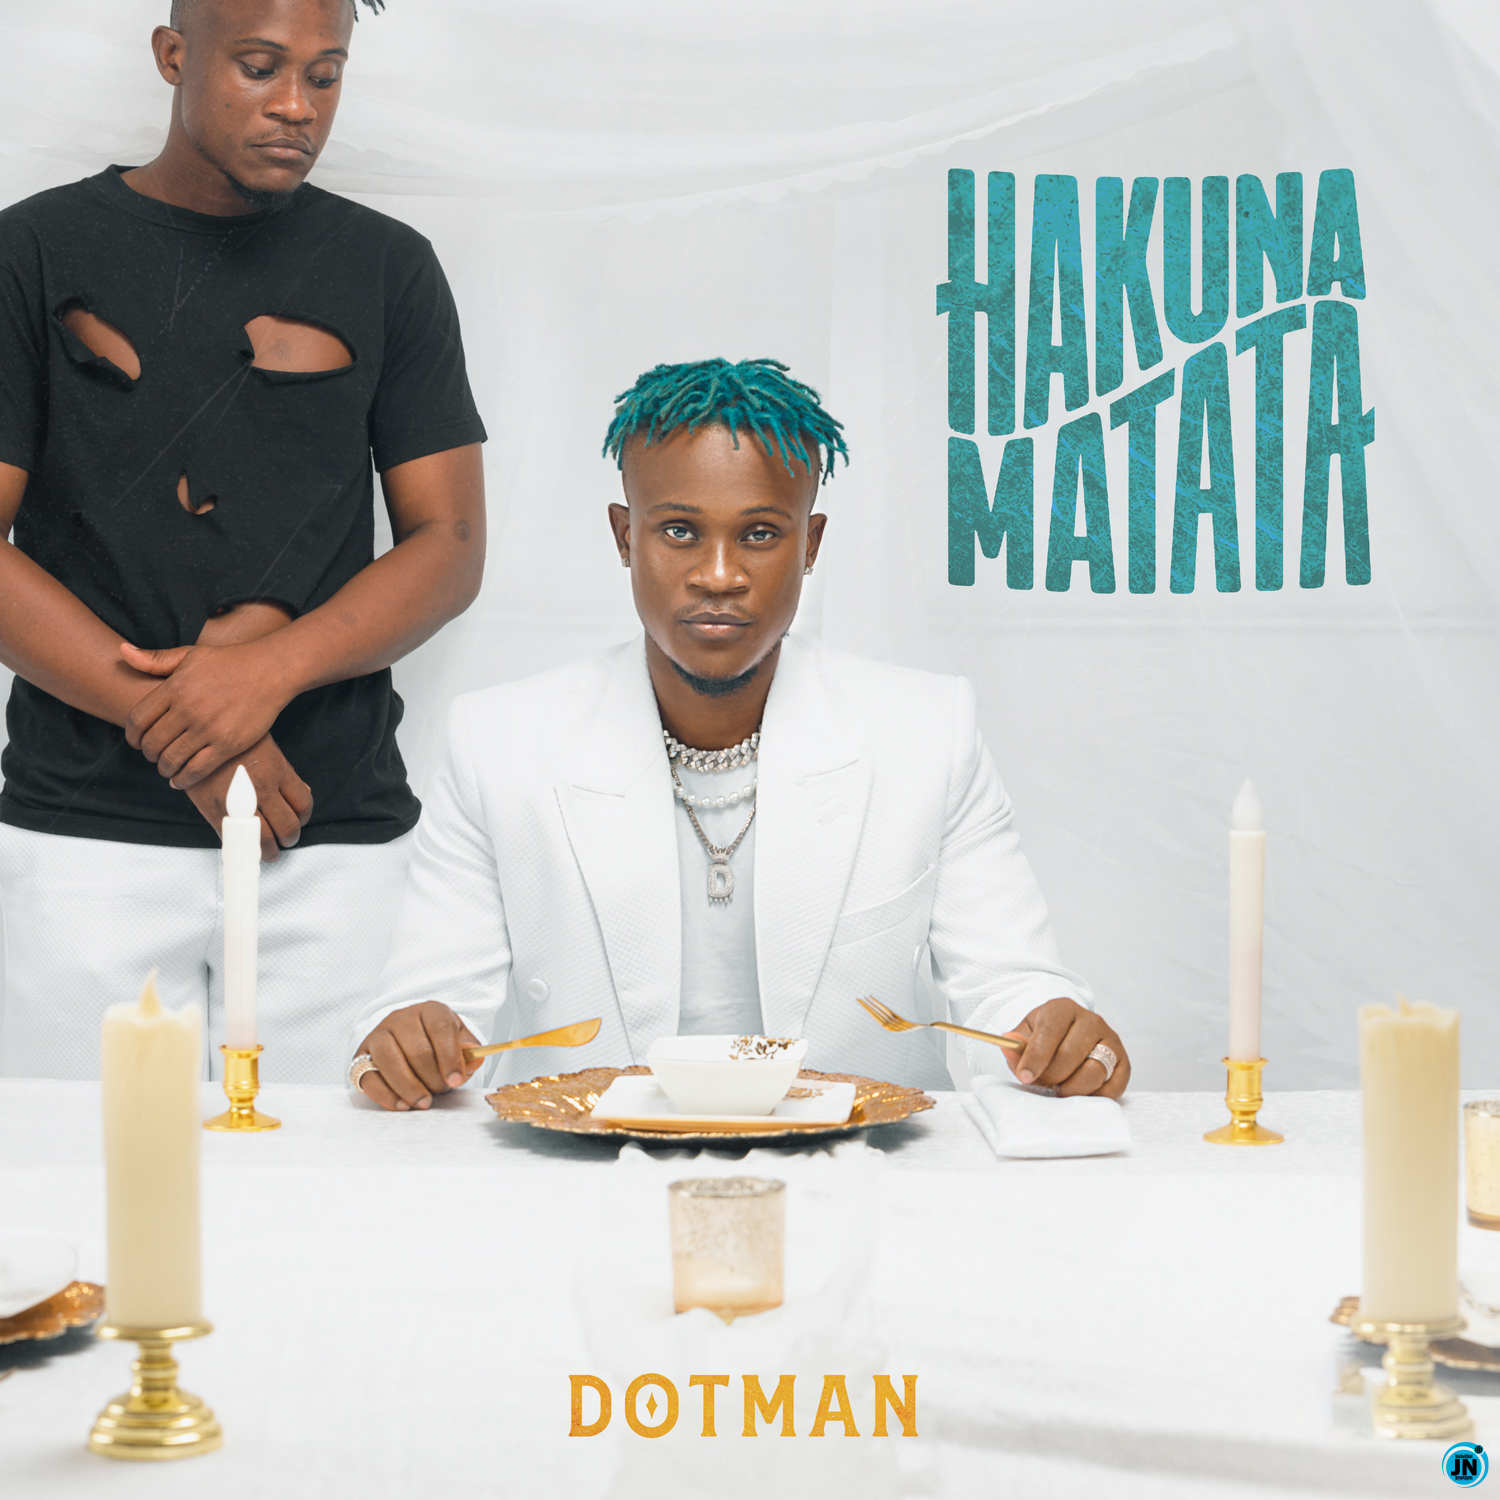 Dotman - Hakuna Matata (Wahala)   Mp3 Download lyrics